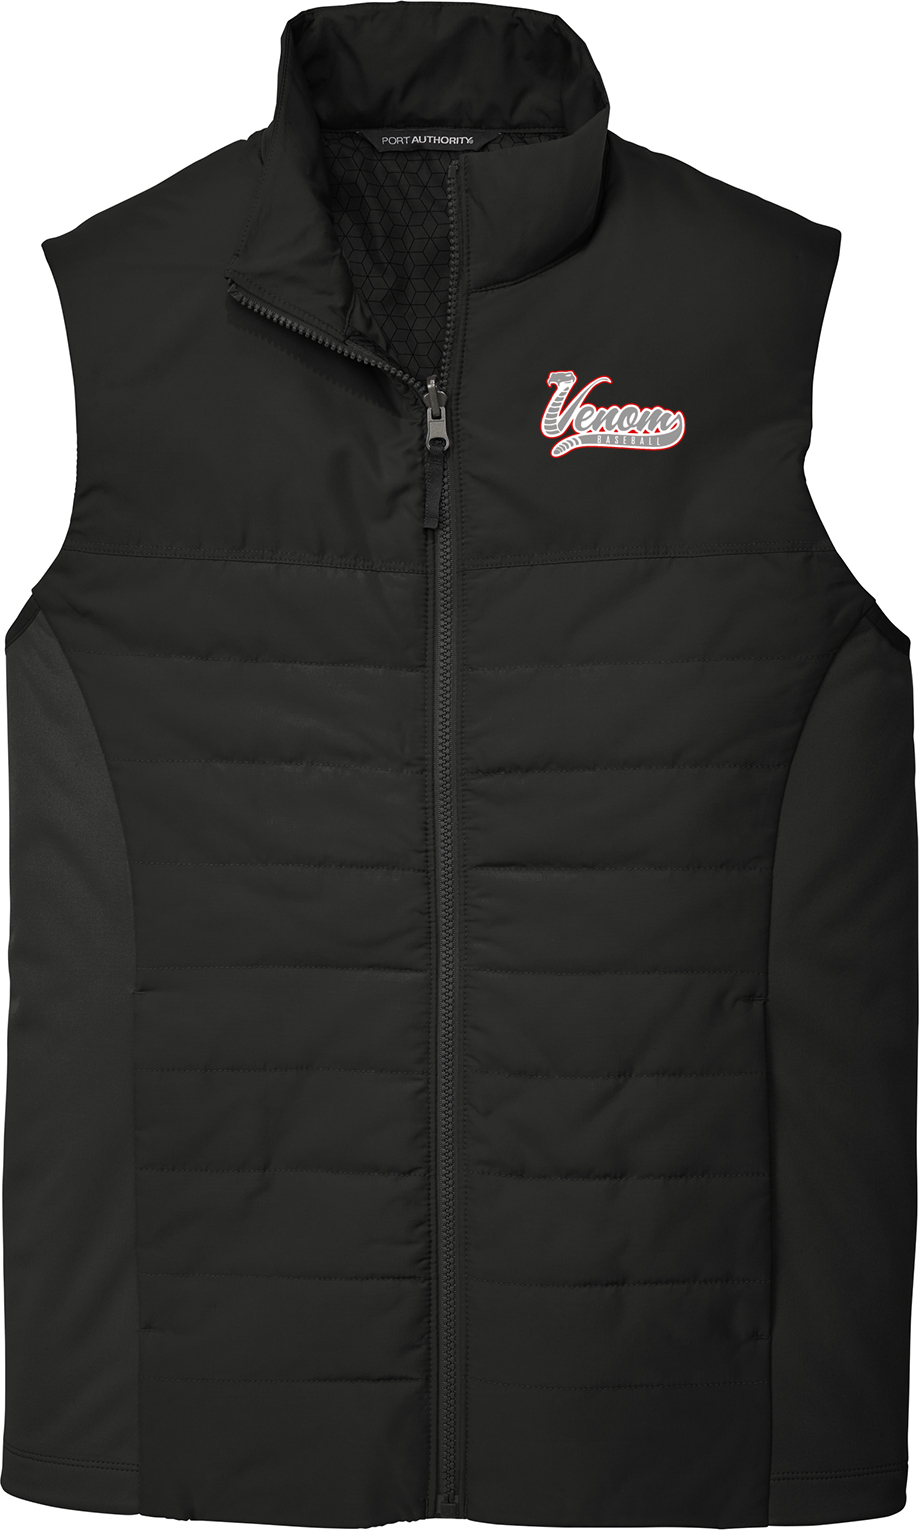 Valley Venom Baseball Vest